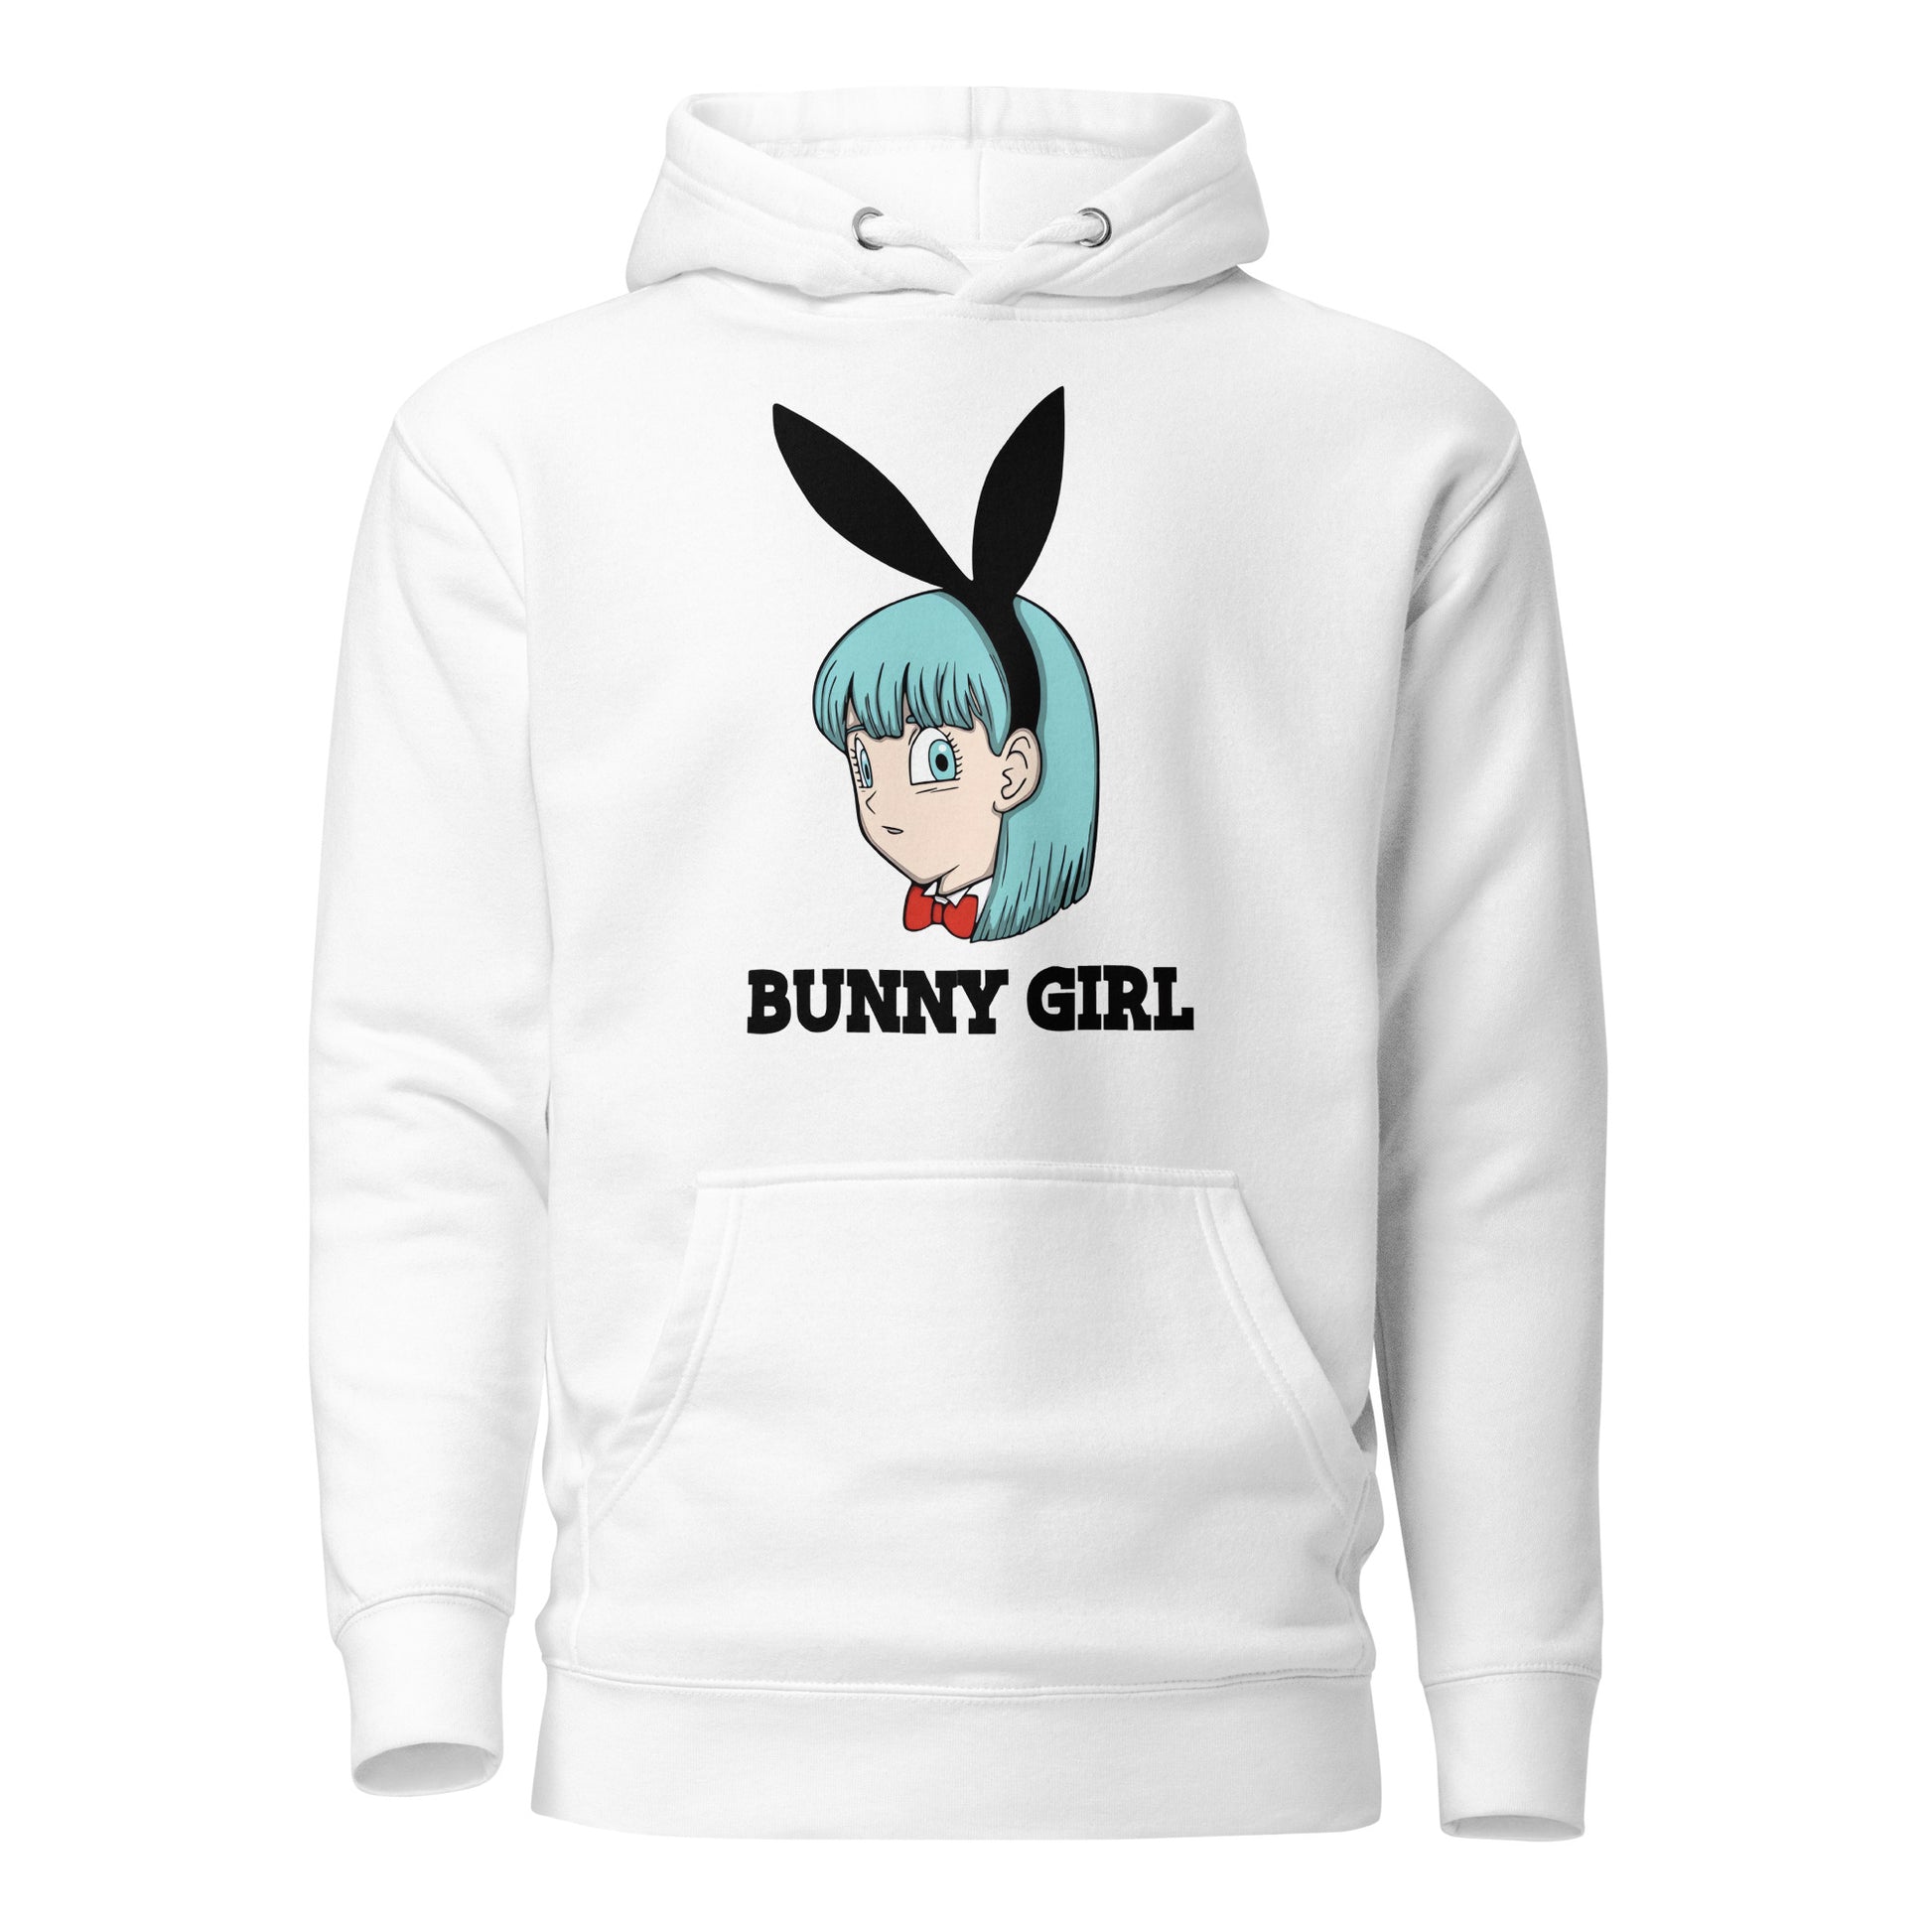 Hoodie de Bunny Girl, Disponible en la mejor tienda online para comprar tu merch favorita, la mejor Calidad, compra Ahora en Superstar!